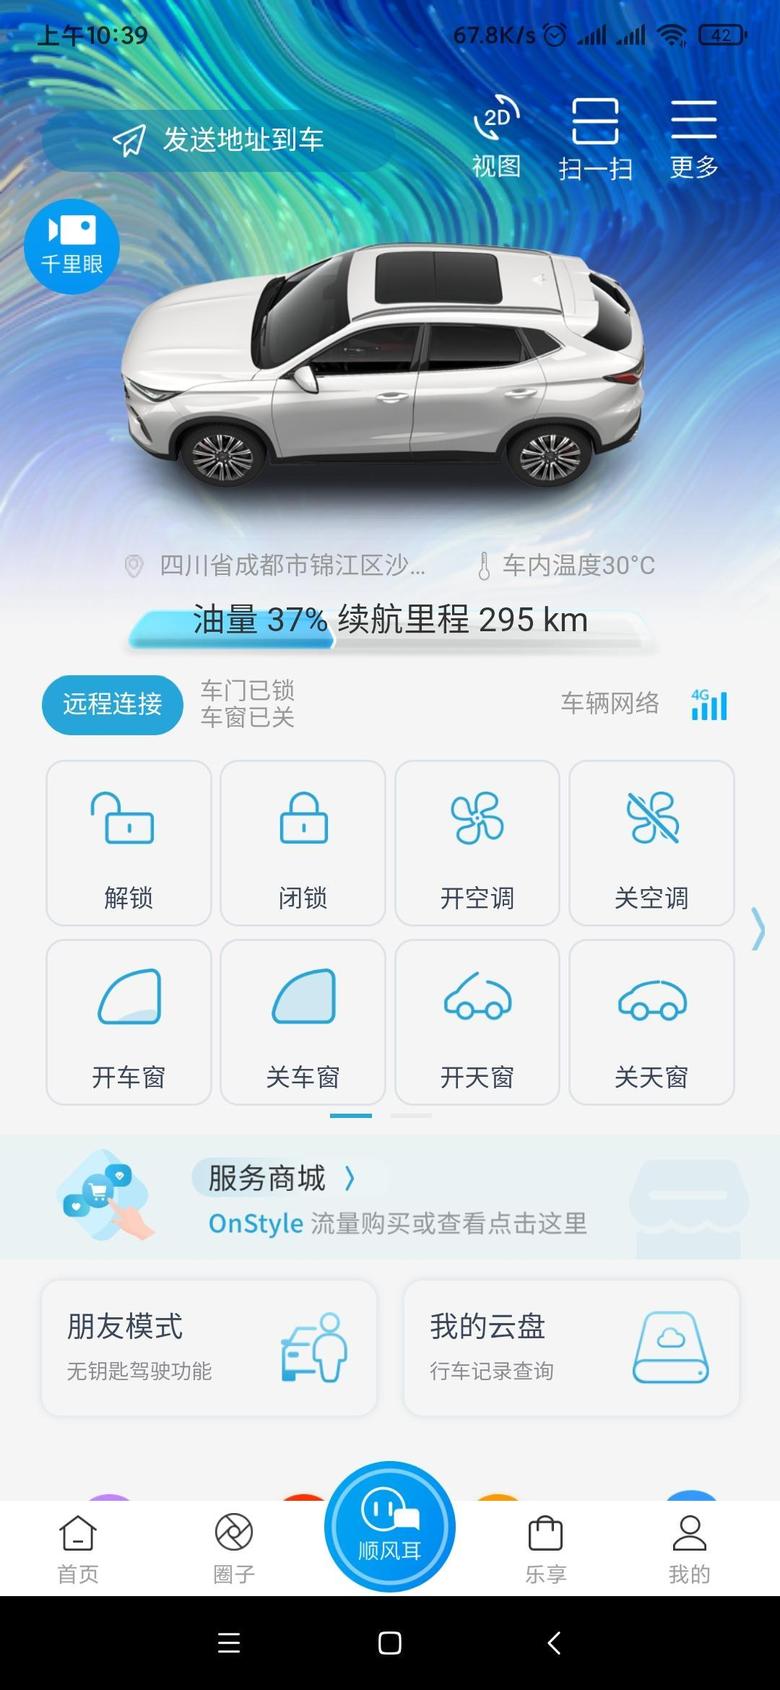 长安欧尚x5 欧尚app这个界面打开是空白的，看不到车辆状态了，好几天都是这个情况，你们的有问题吗？